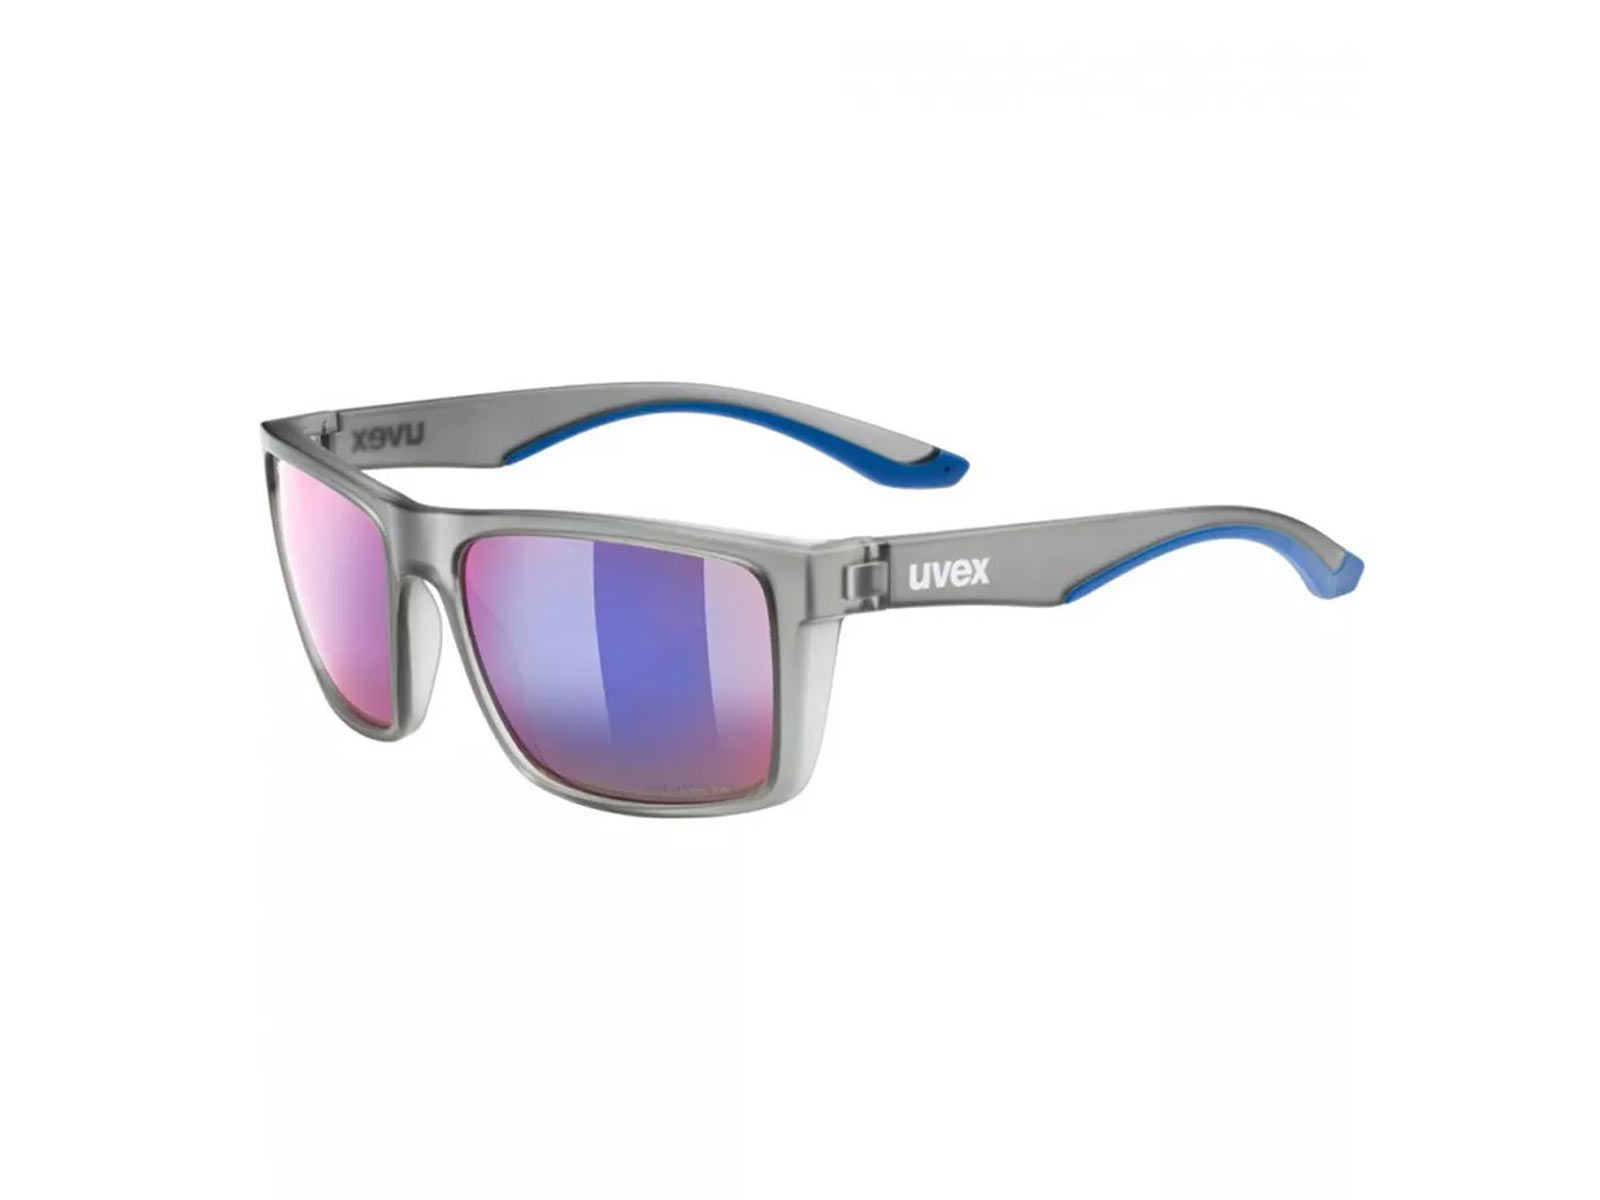 Uvex Lgl 50 CV Glasses - Smoke Mat / Colorvision Mirror Plasma